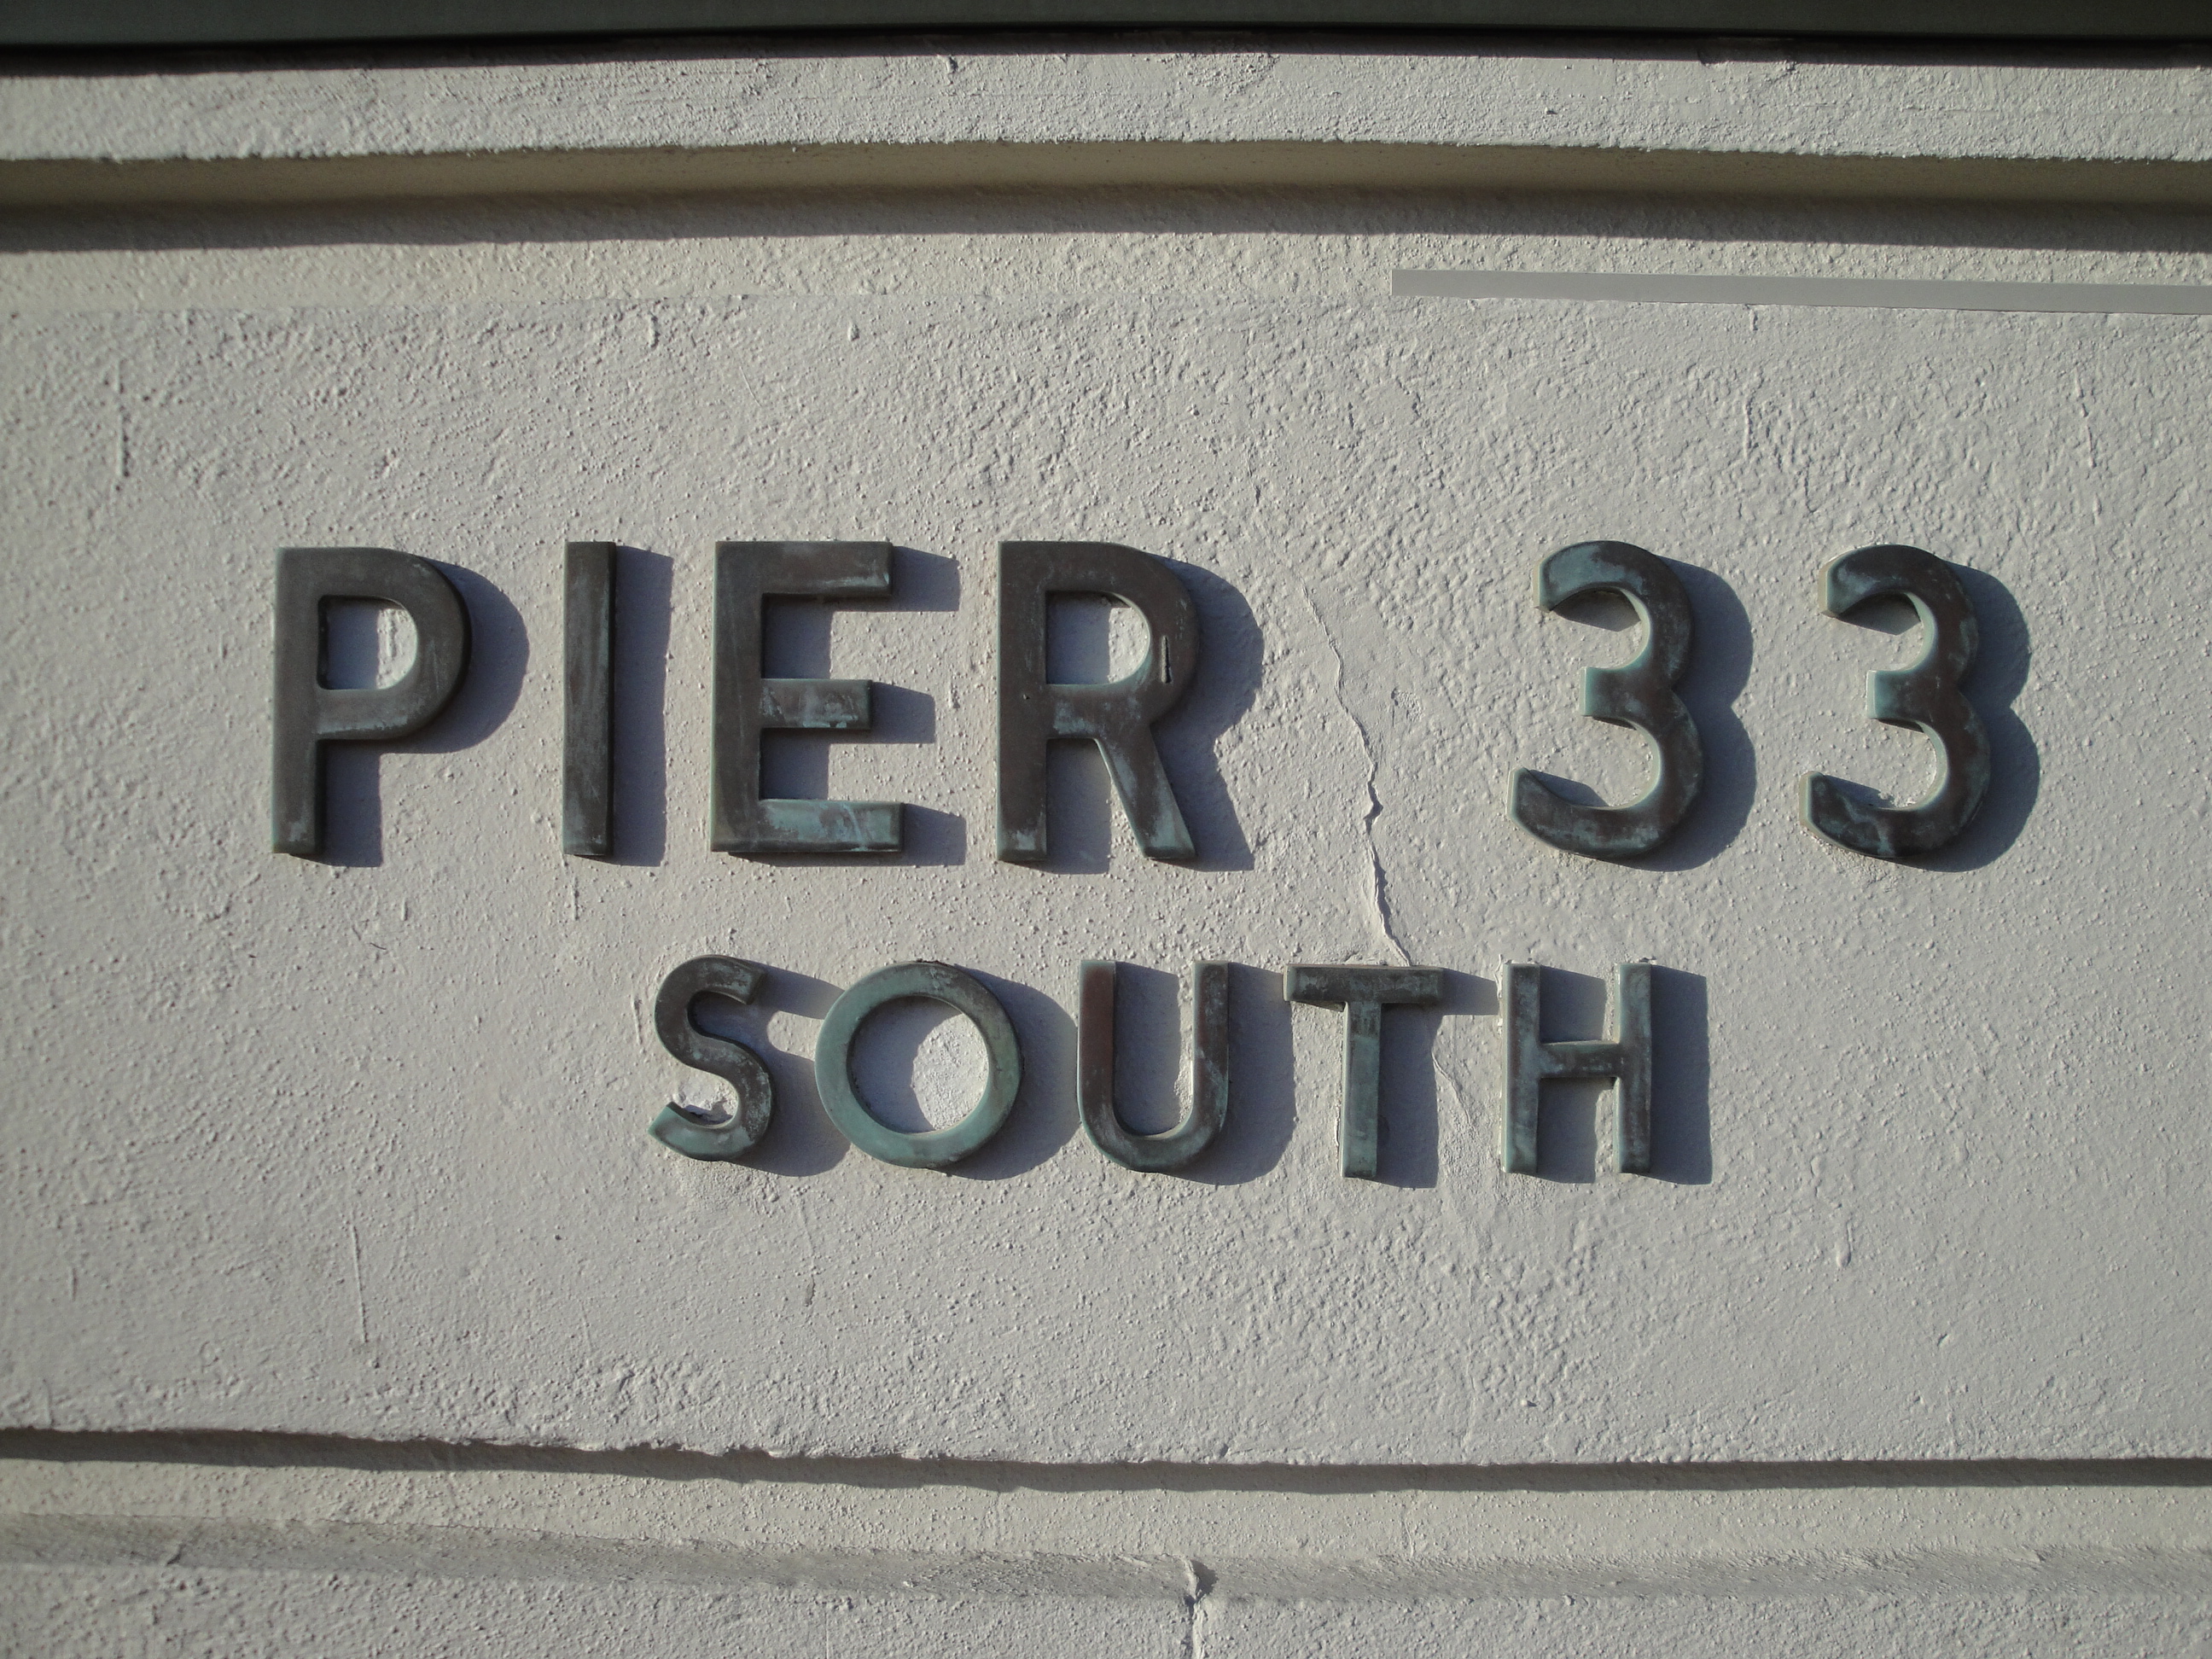 Pier 33 South, San Francisco, California